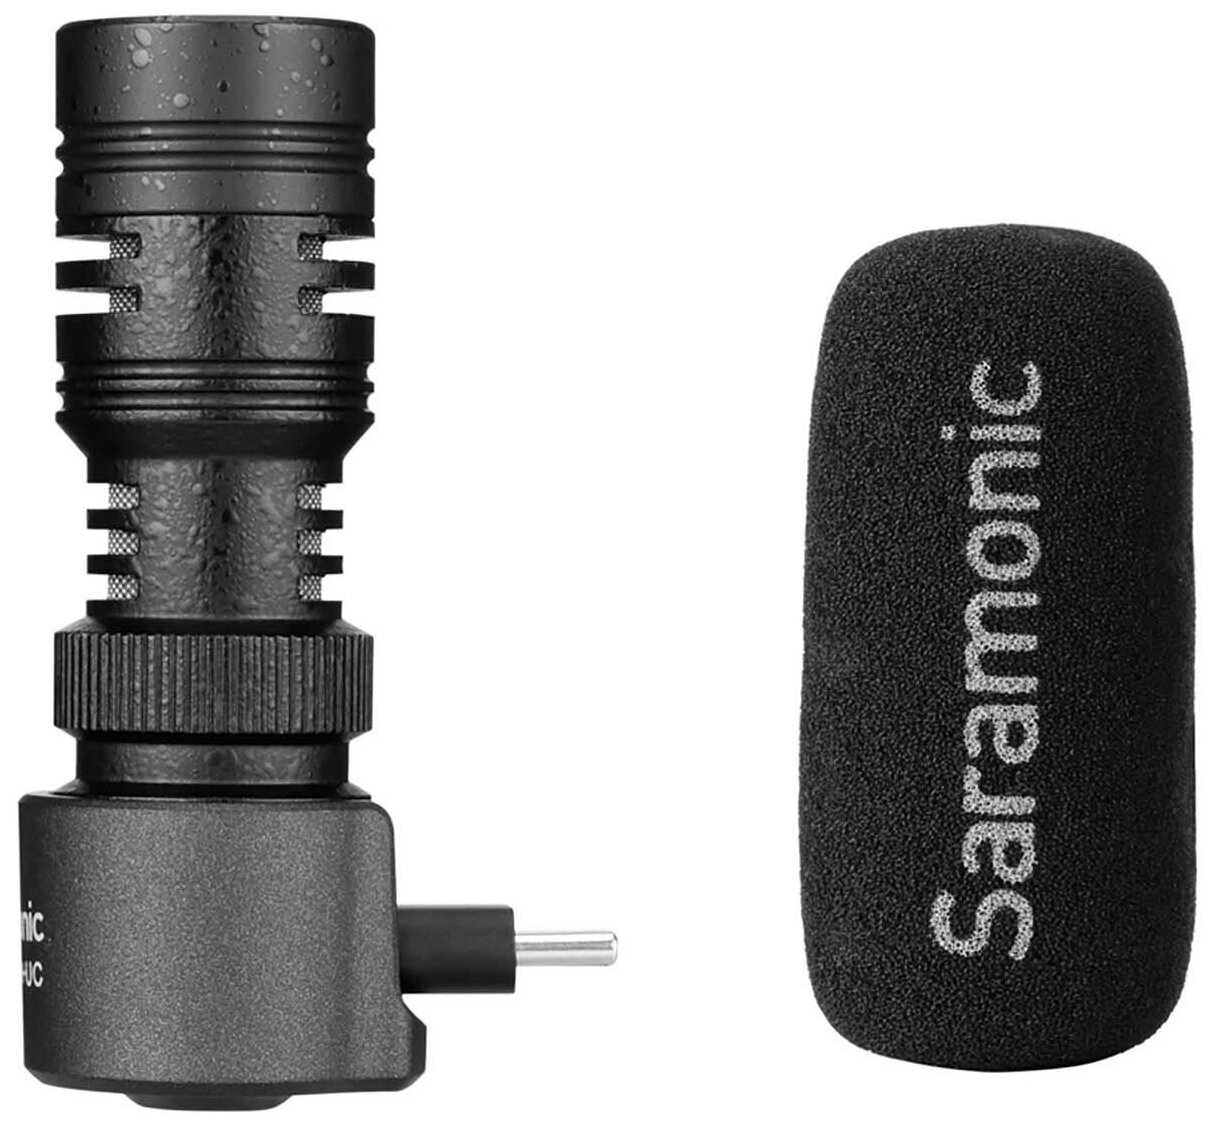 Микрофон Saramonic SmartMic+ UC направленный для смартфонов, разъем Type-C